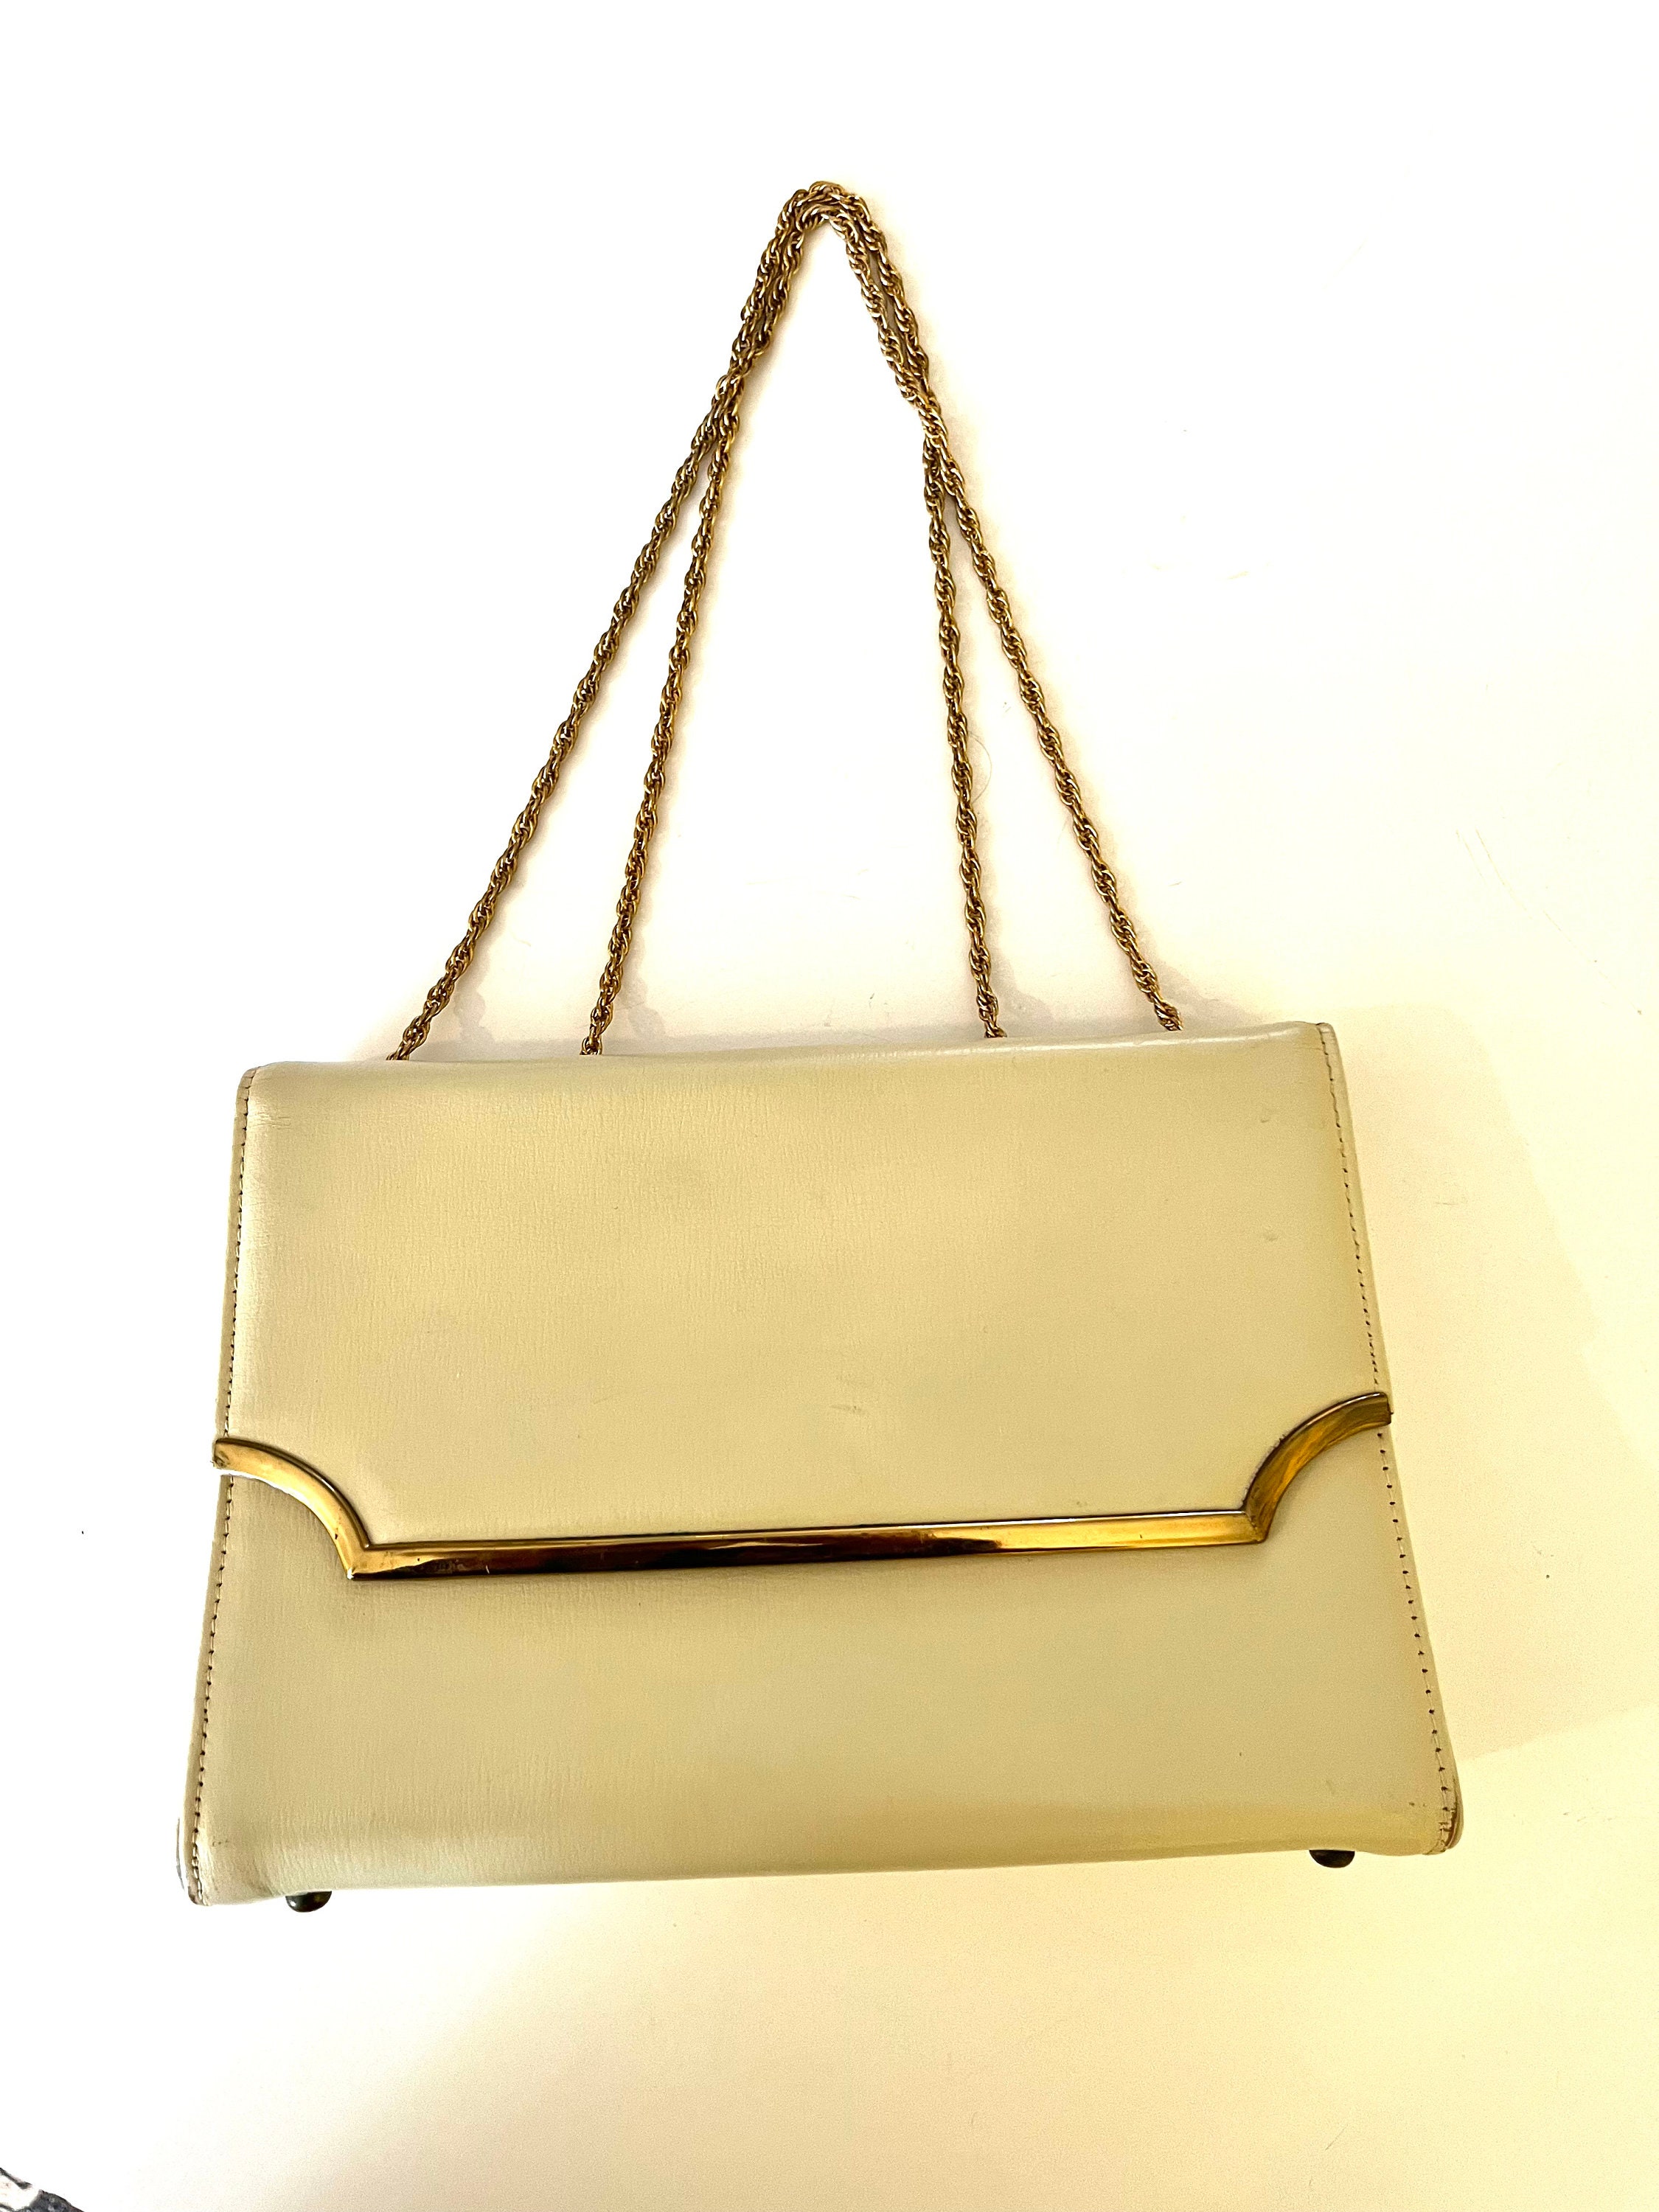 Vintage Black Patent Leather Convertible Envelope Clutch Bag Purse Gold  Accent